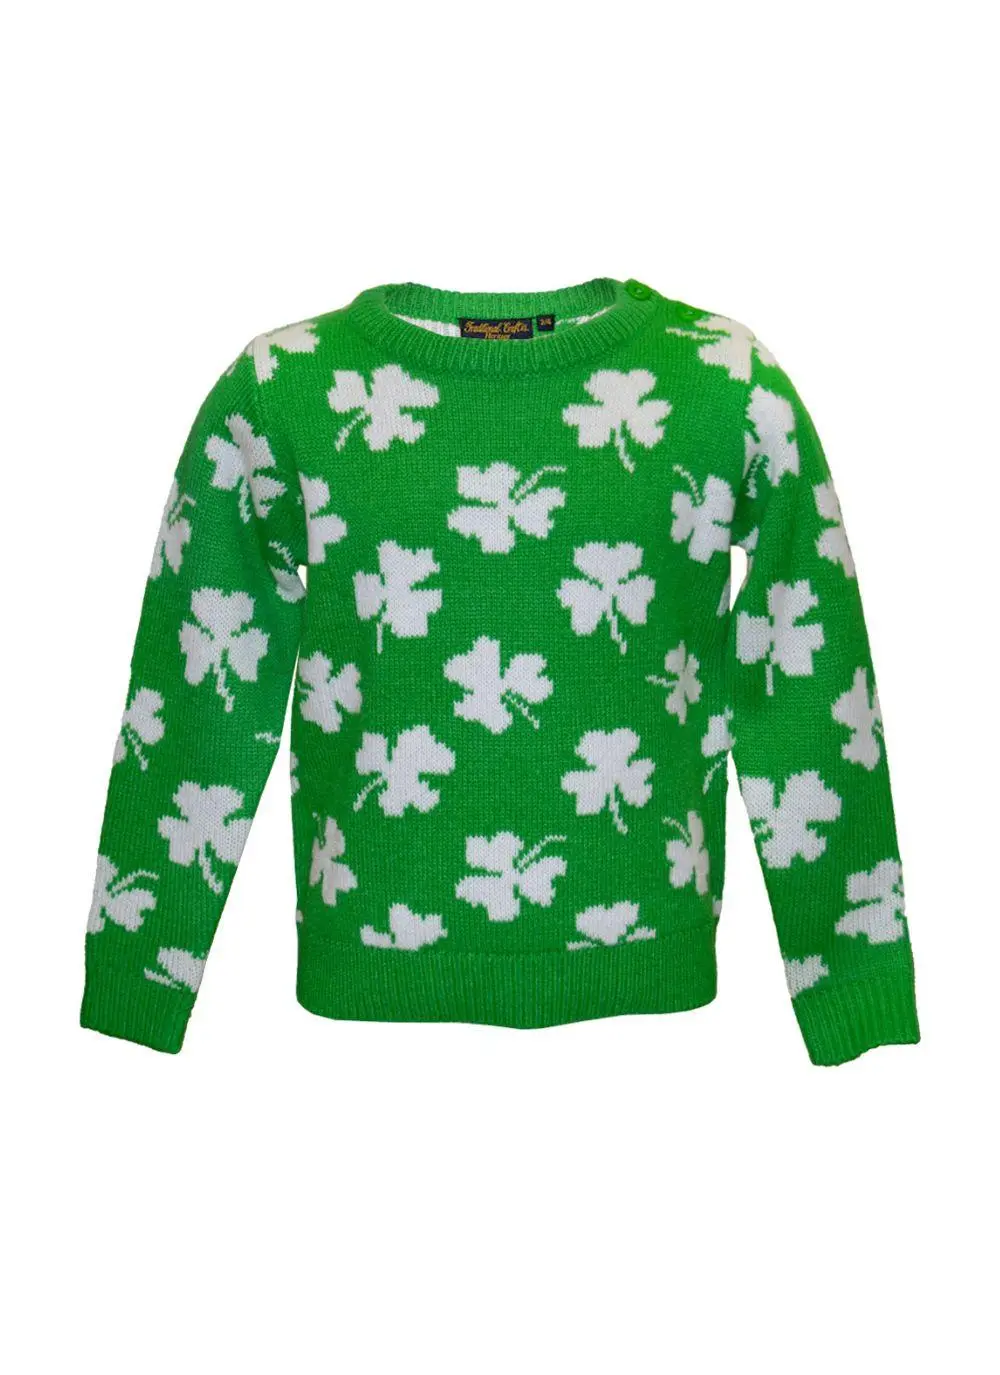 Kids Knit Green Shamrock Sweater